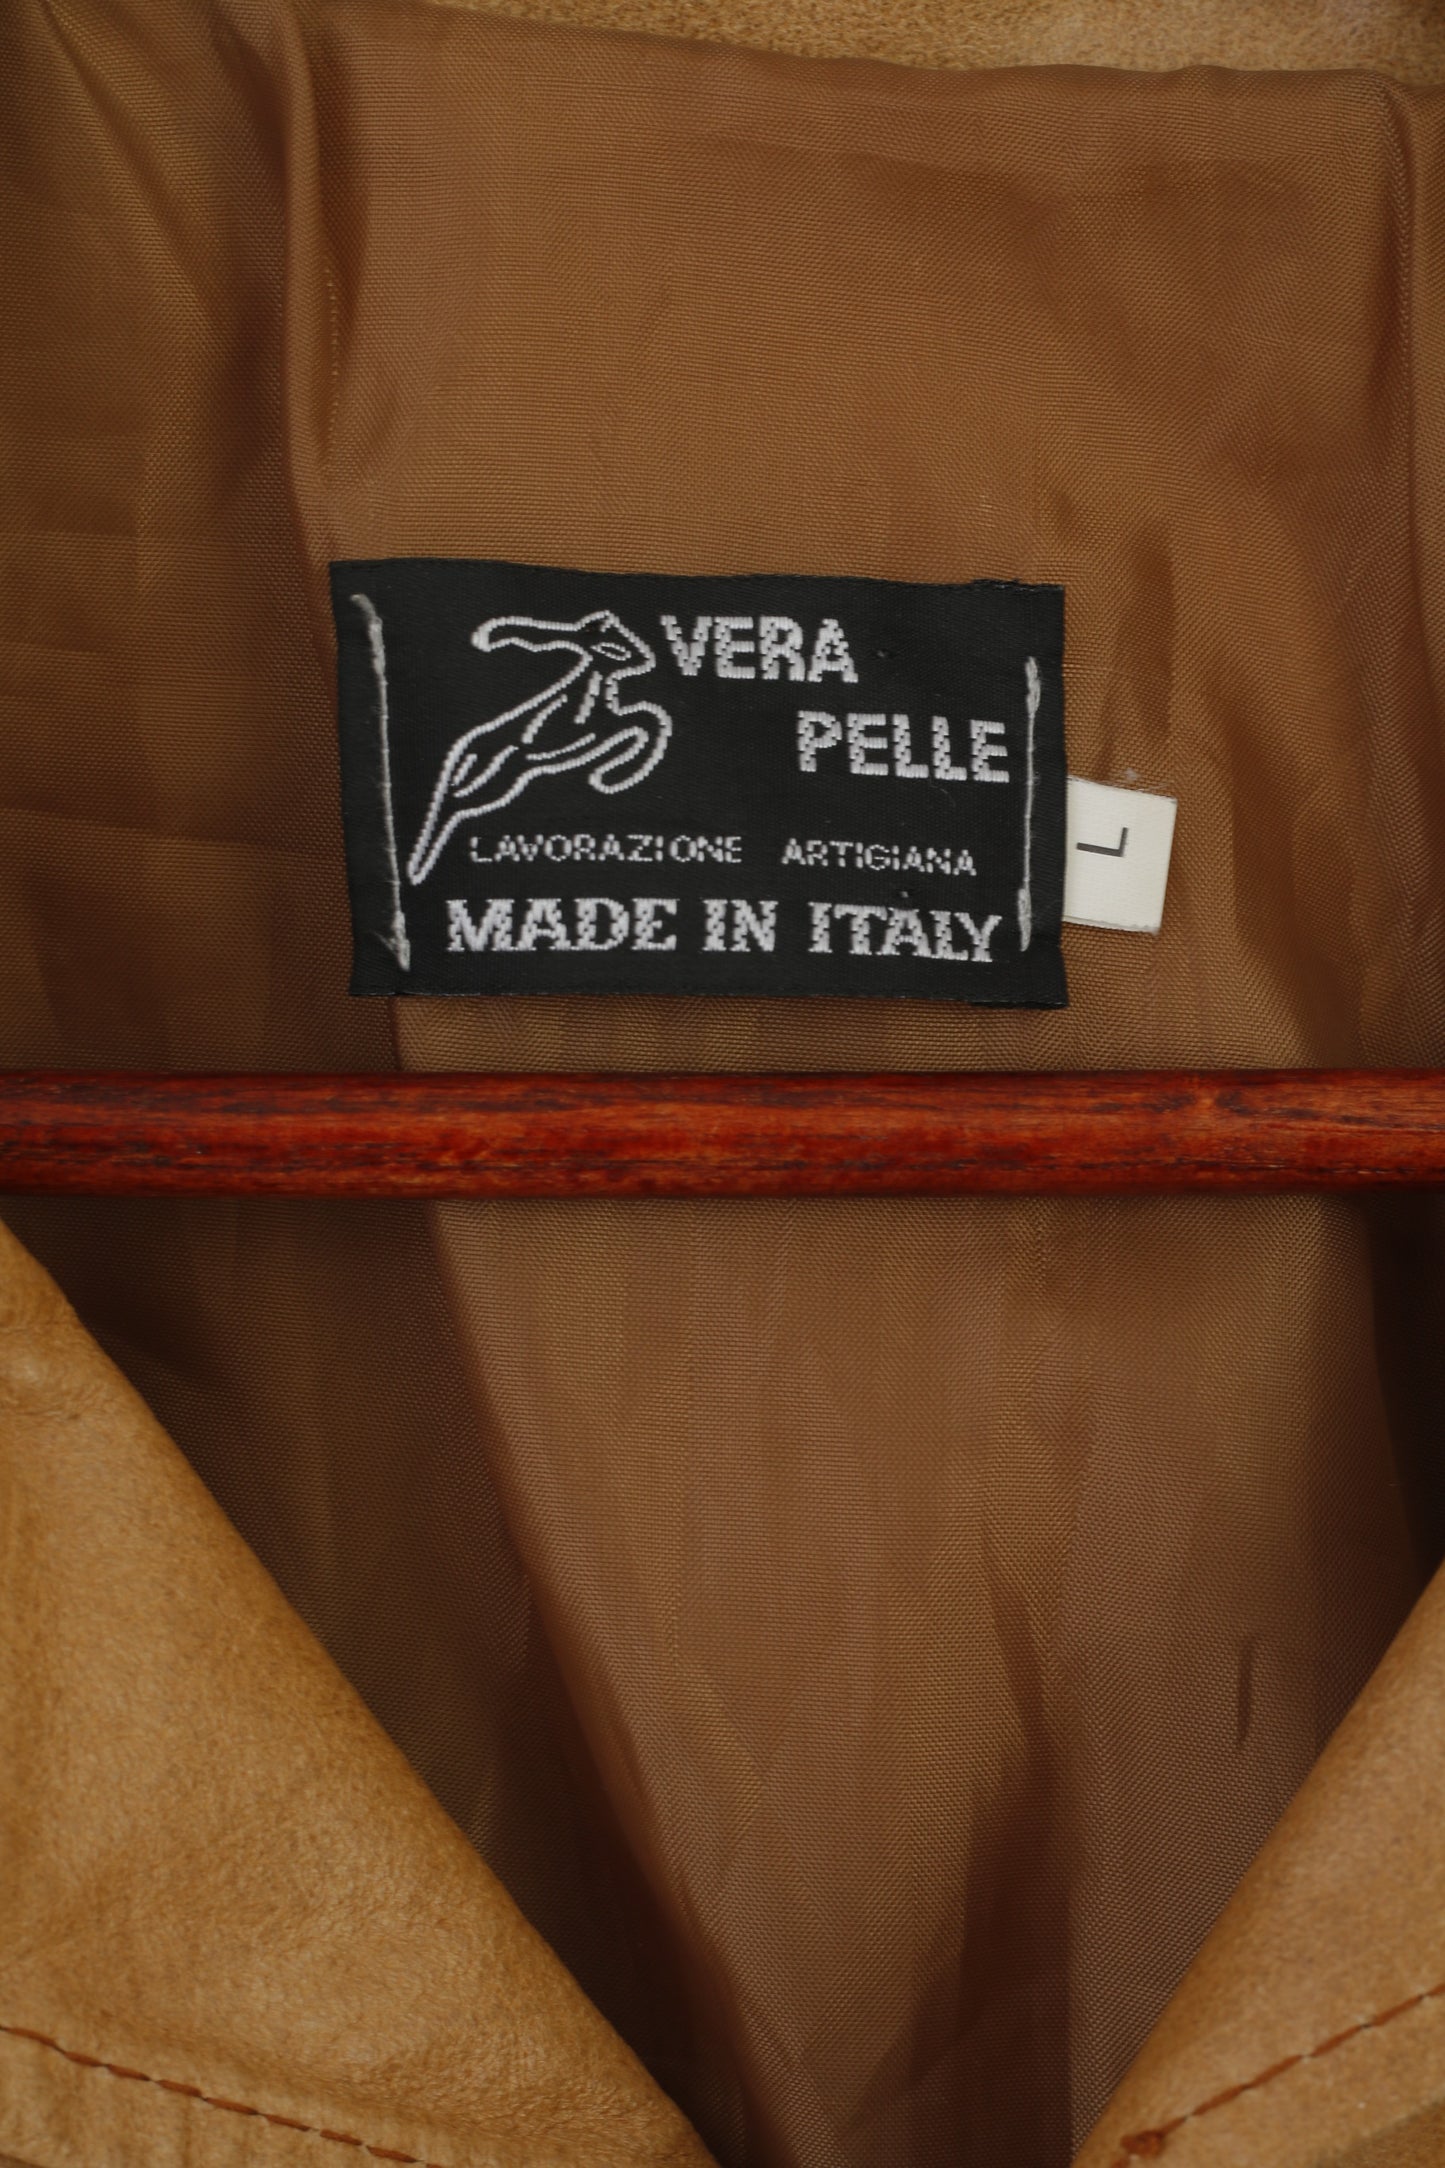 Lavorazione Artigiana Uomo L (M) Giacca in pelle Cammello Pelle Made in Italy Classico vintage Top